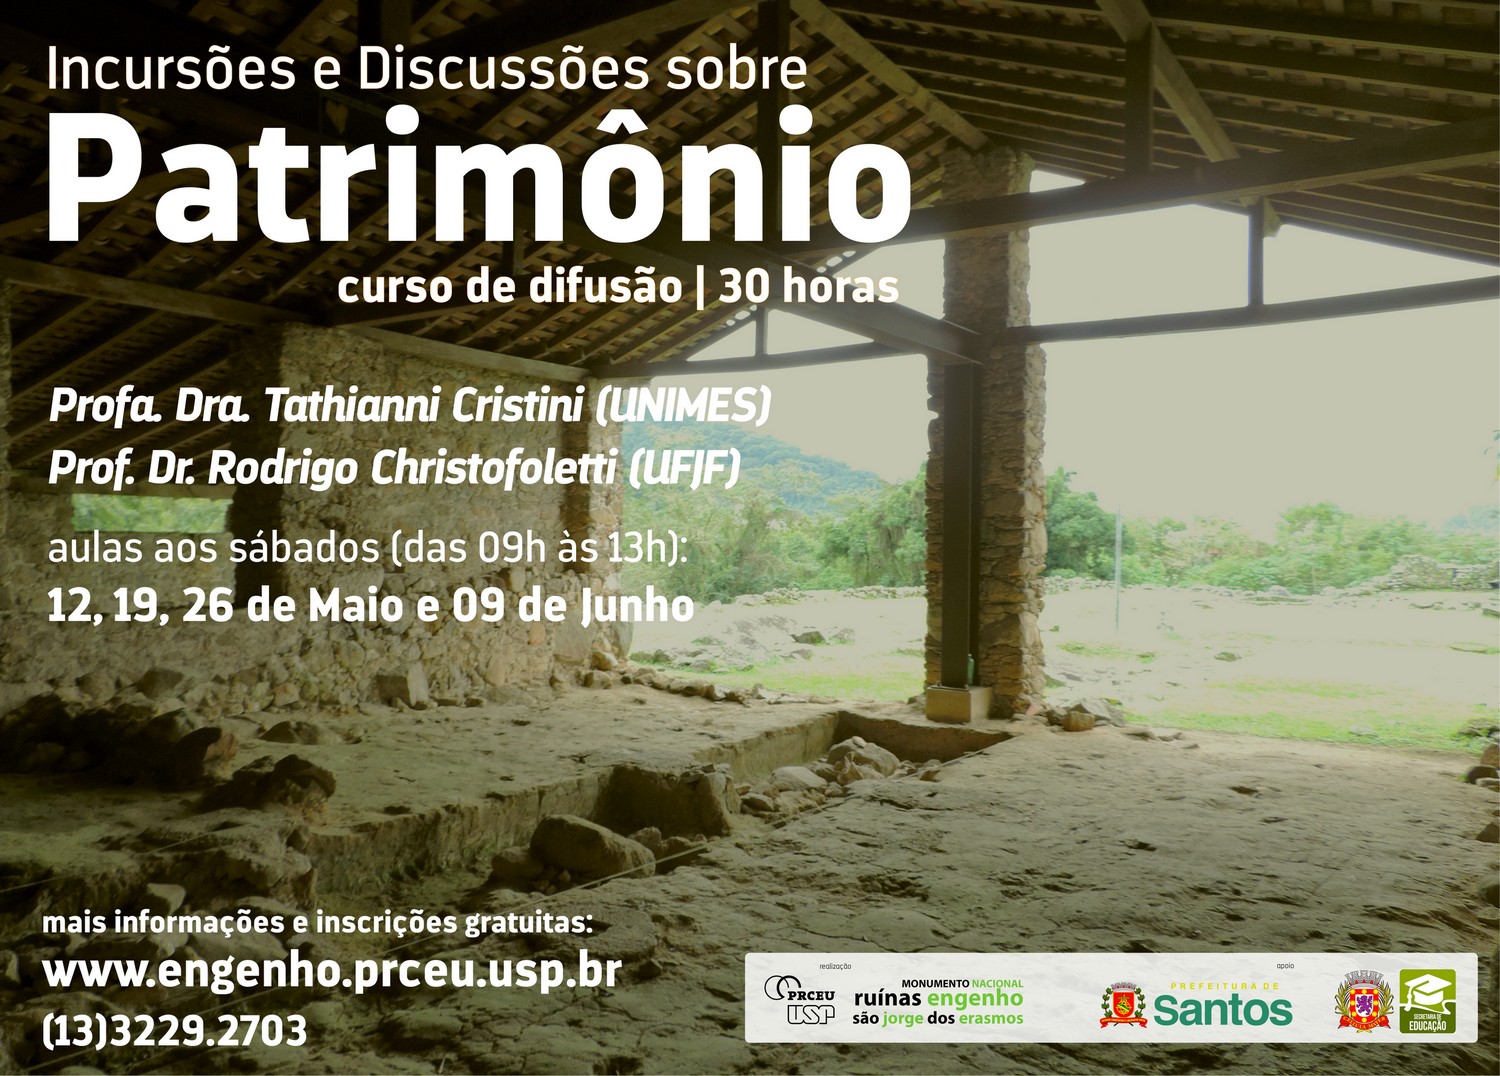 Curso discute preservação do patrimônio histórico, cultural e ambiental